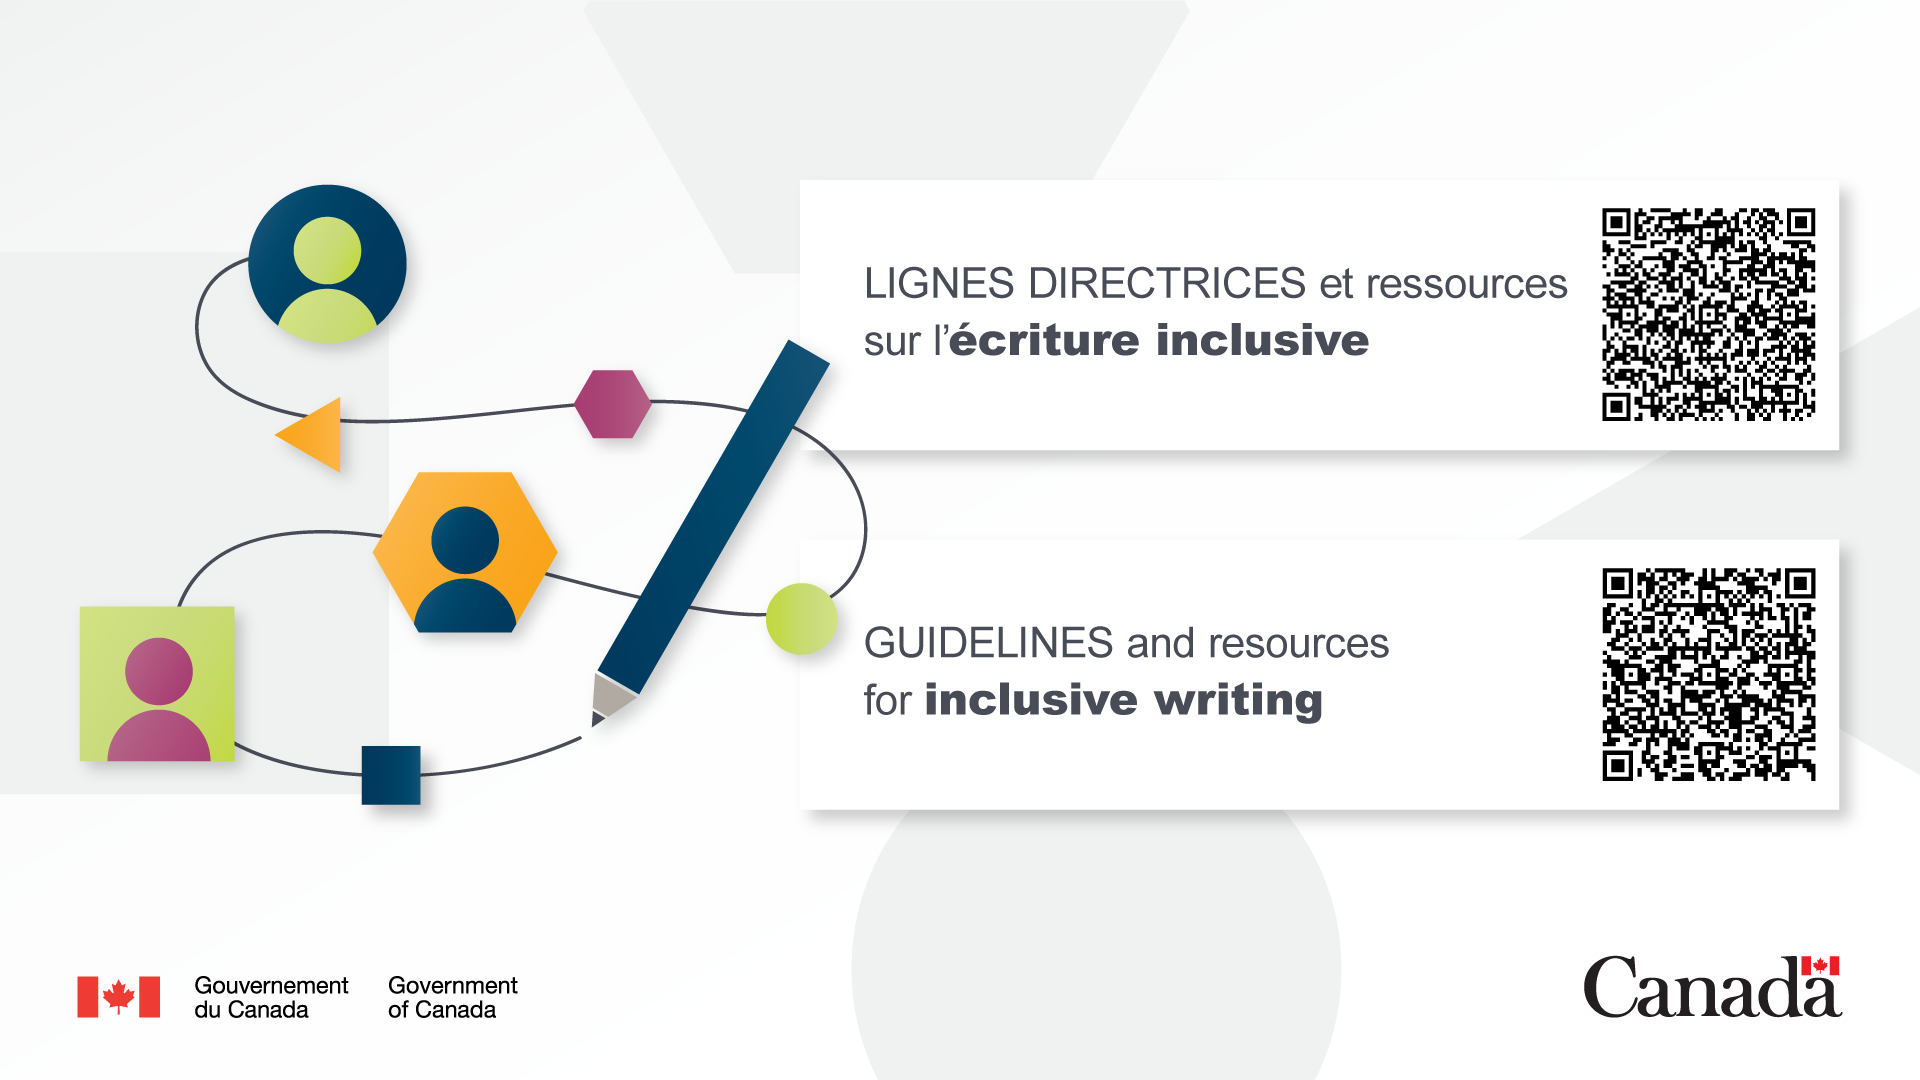 Image de fond bilingue pour PowerPoint pour promouvoir les Lignes directrices sur l’écriture inclusive.